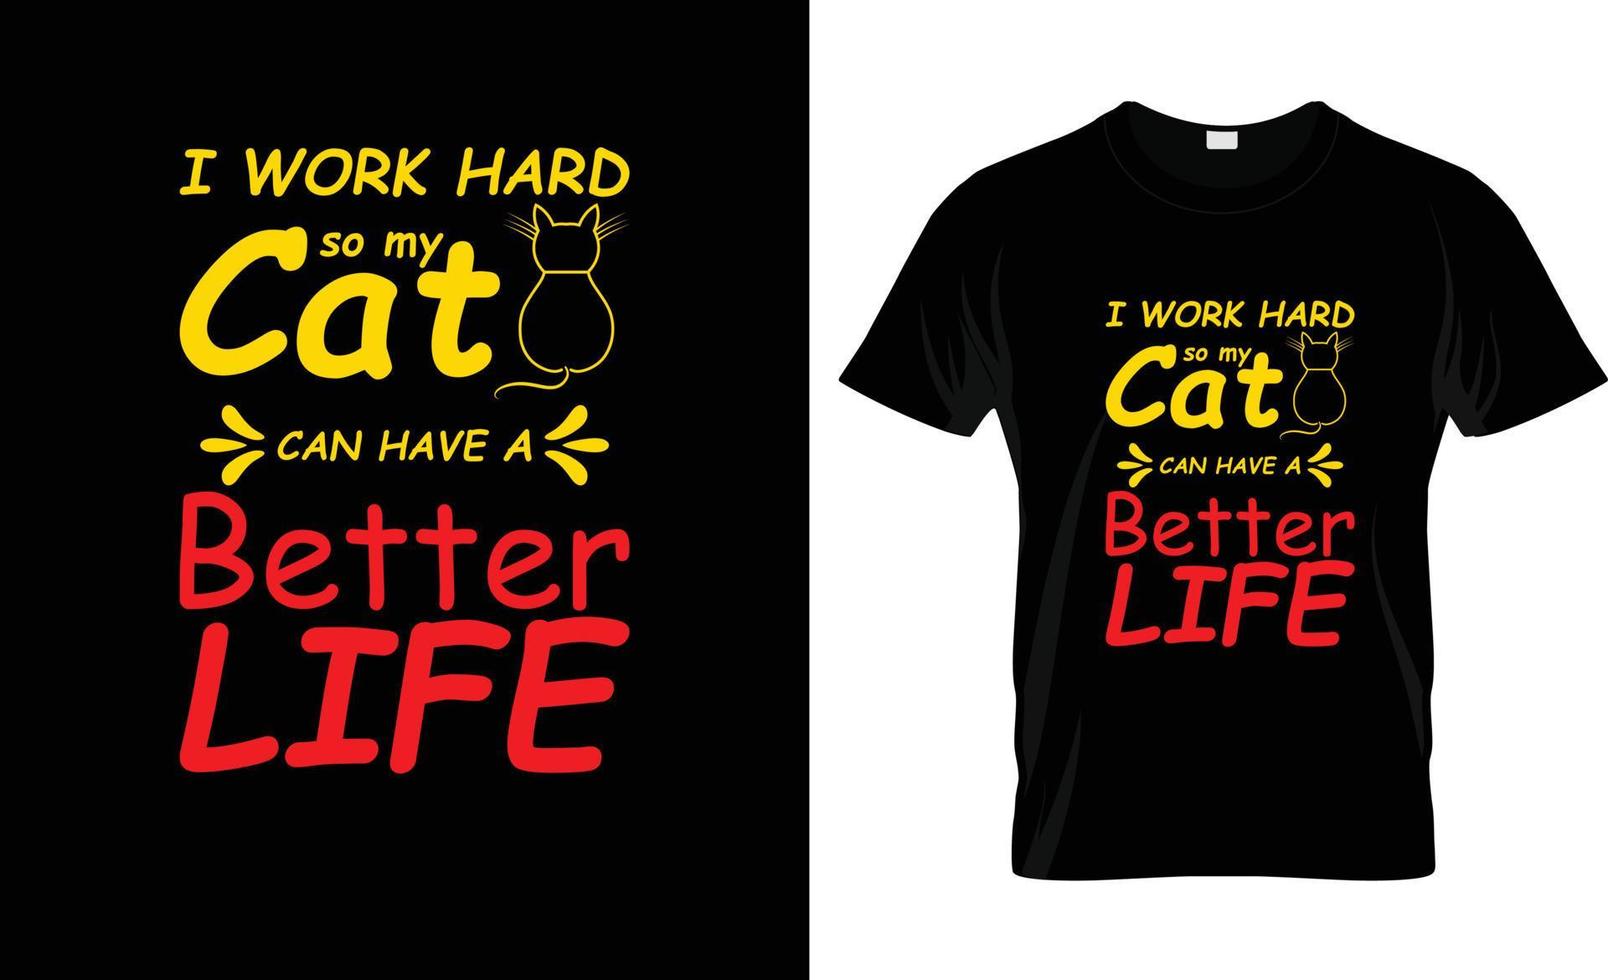 jag arbete hård så min katt kan ha en bättre liv Citat t-shirt design och tecknad serie kombinera t-shirt design vektor